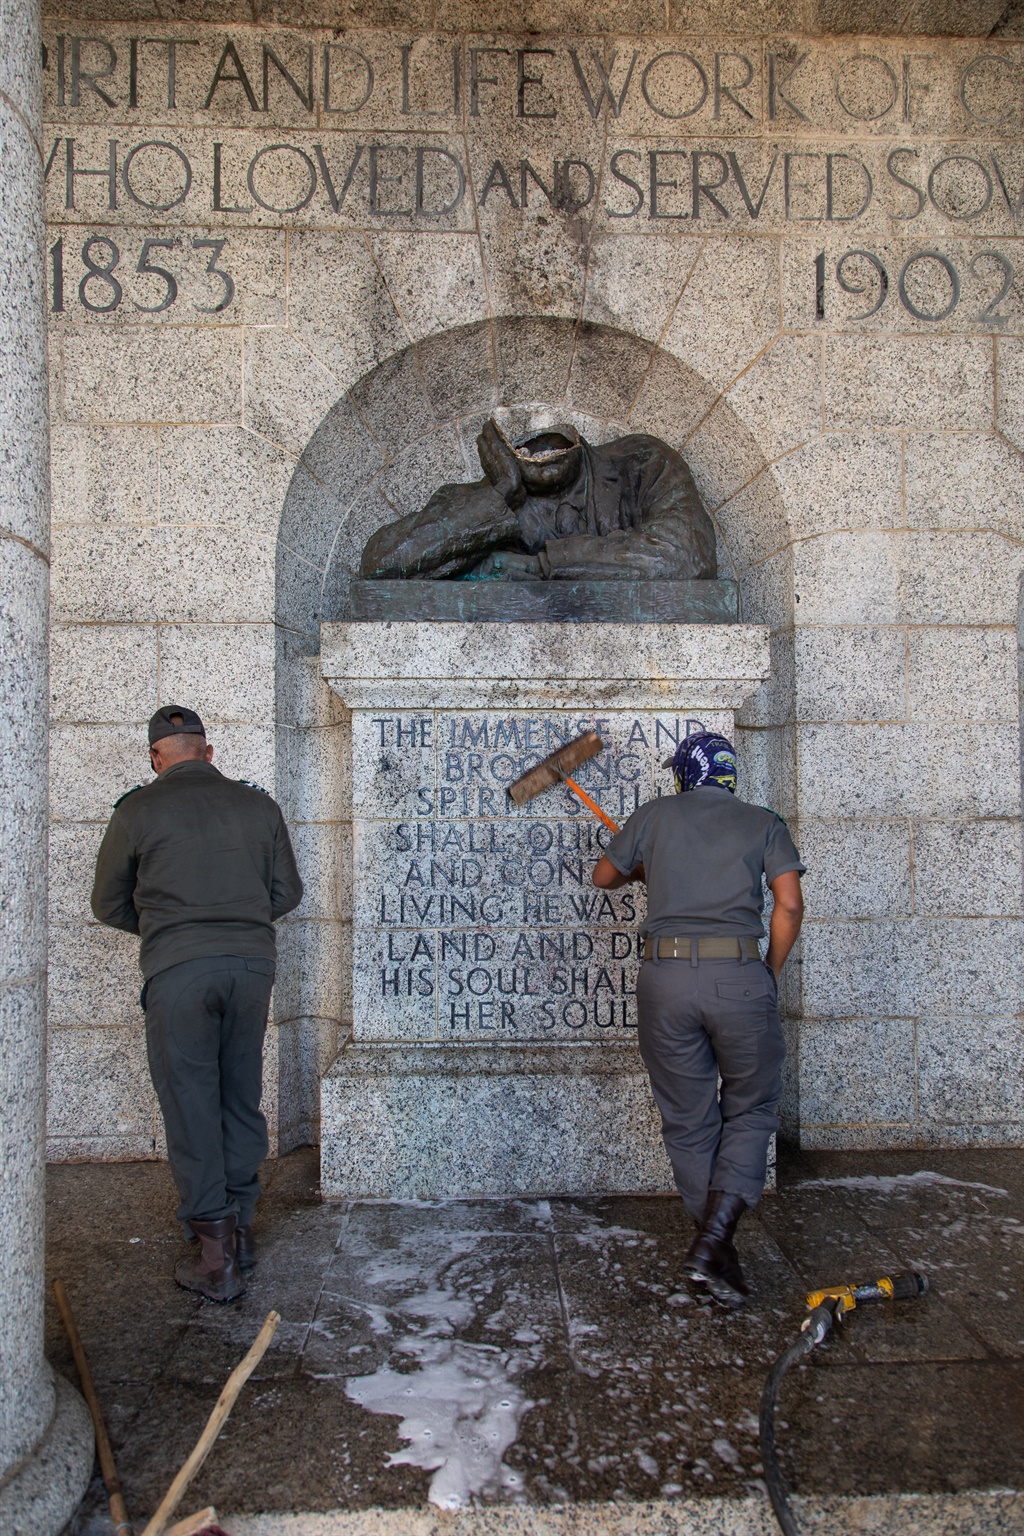 Cecil John Rhodes statue at Rhodes Memorial